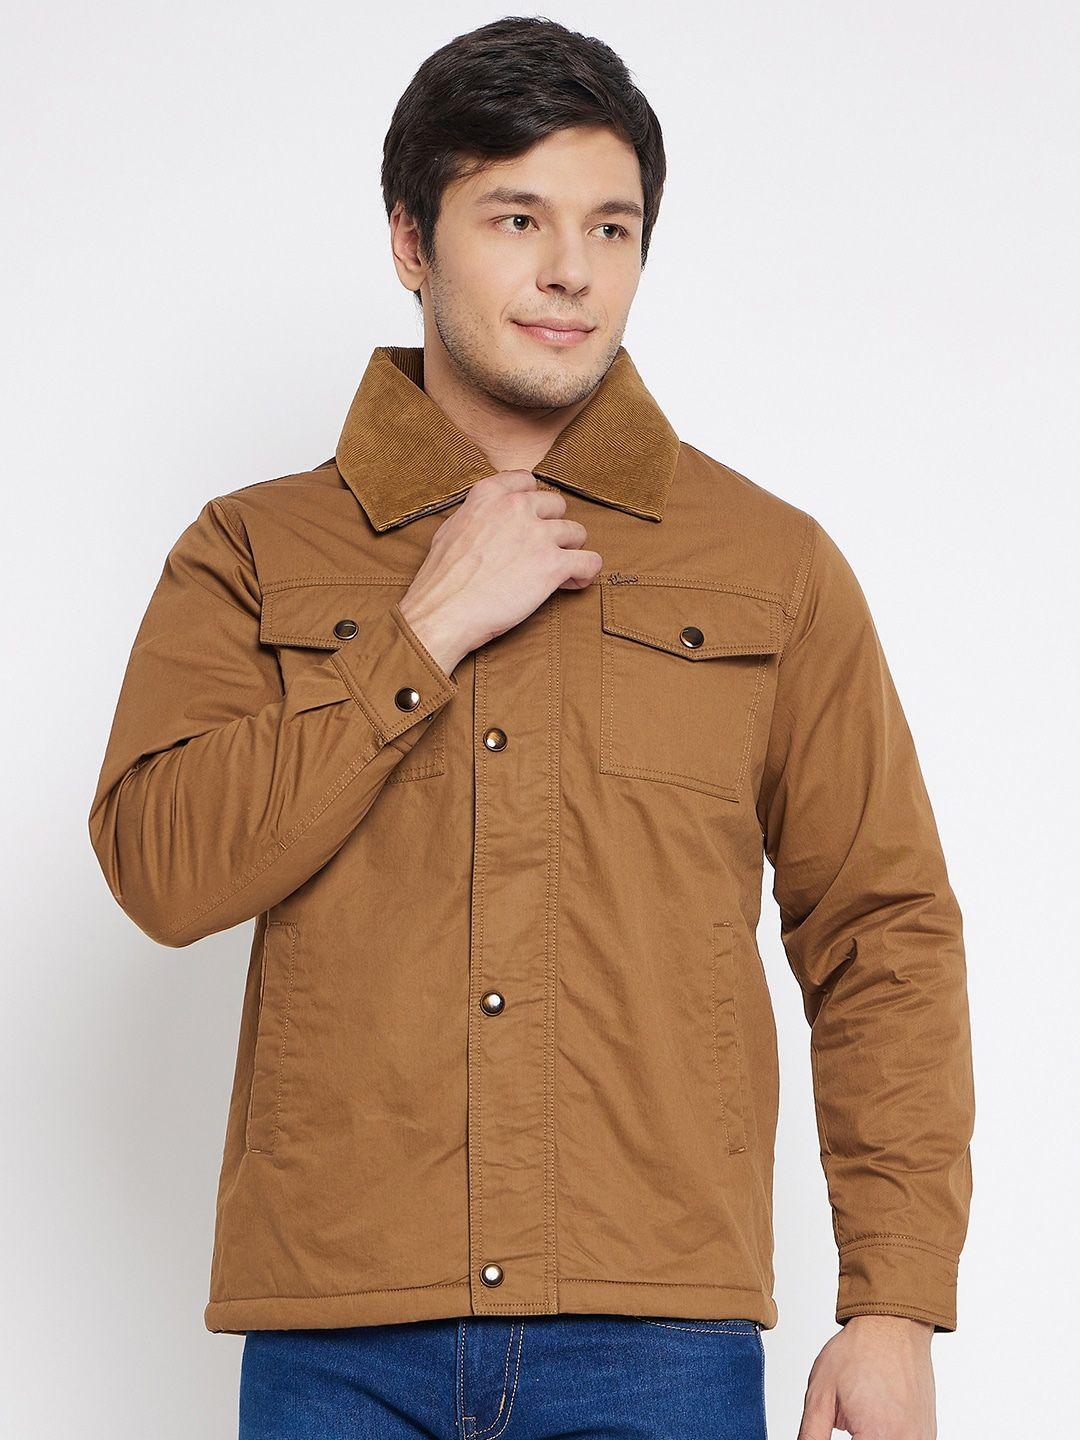 okane-spread-collar-lightweight-cotton-tailored-jacket